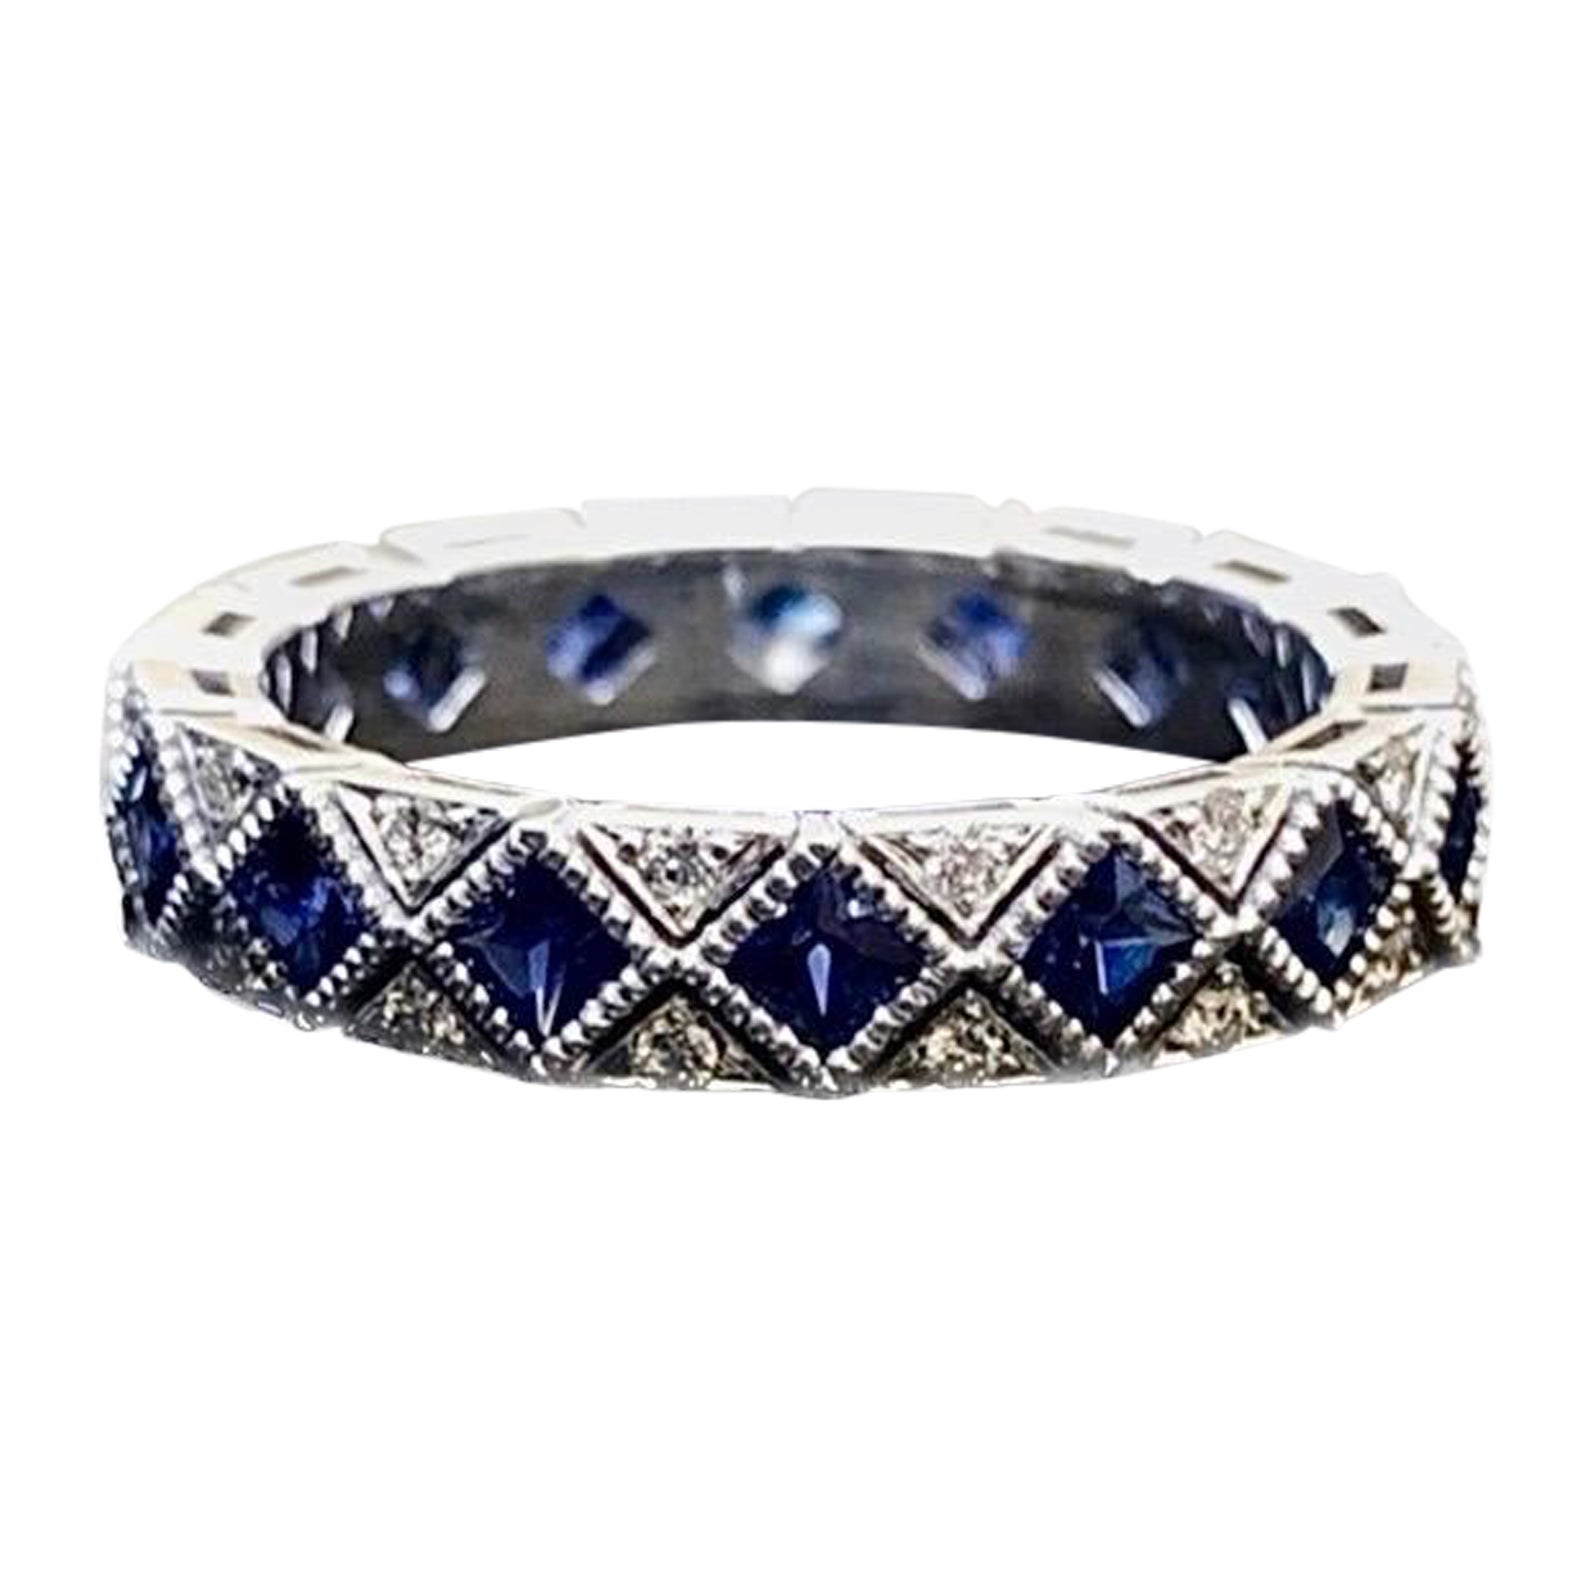 Vintage inspirierter Art Deco Platin Eternity Diamant-Ring mit Prinzessinnenschliff Saphir